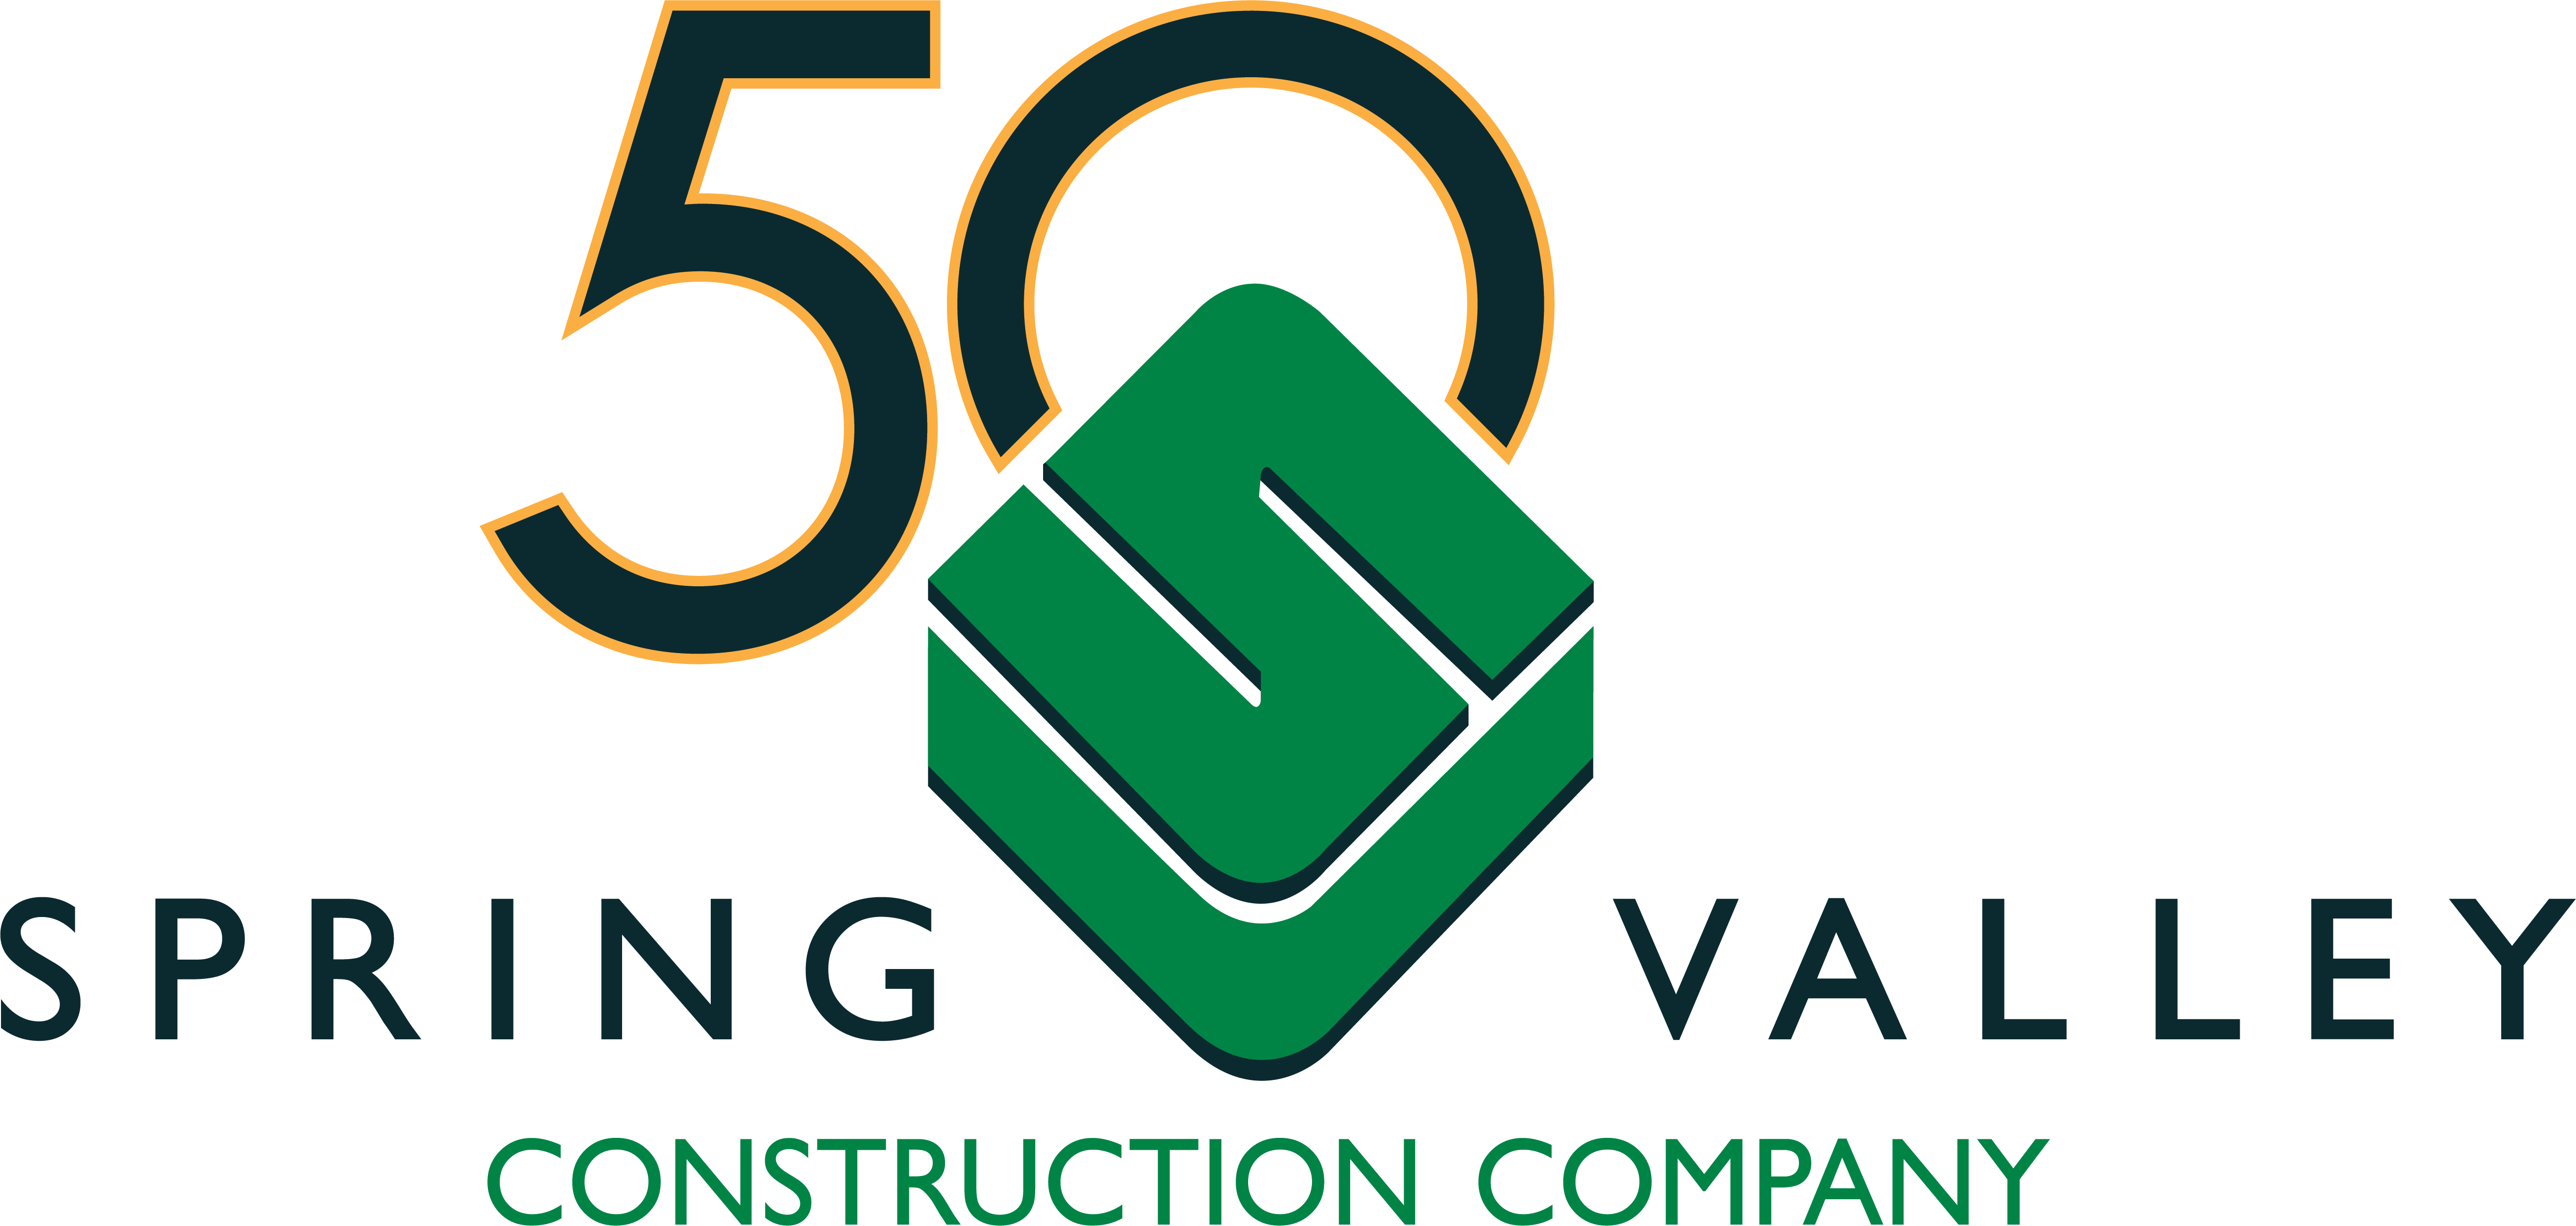 Spring Valley Construction Company Company Logo